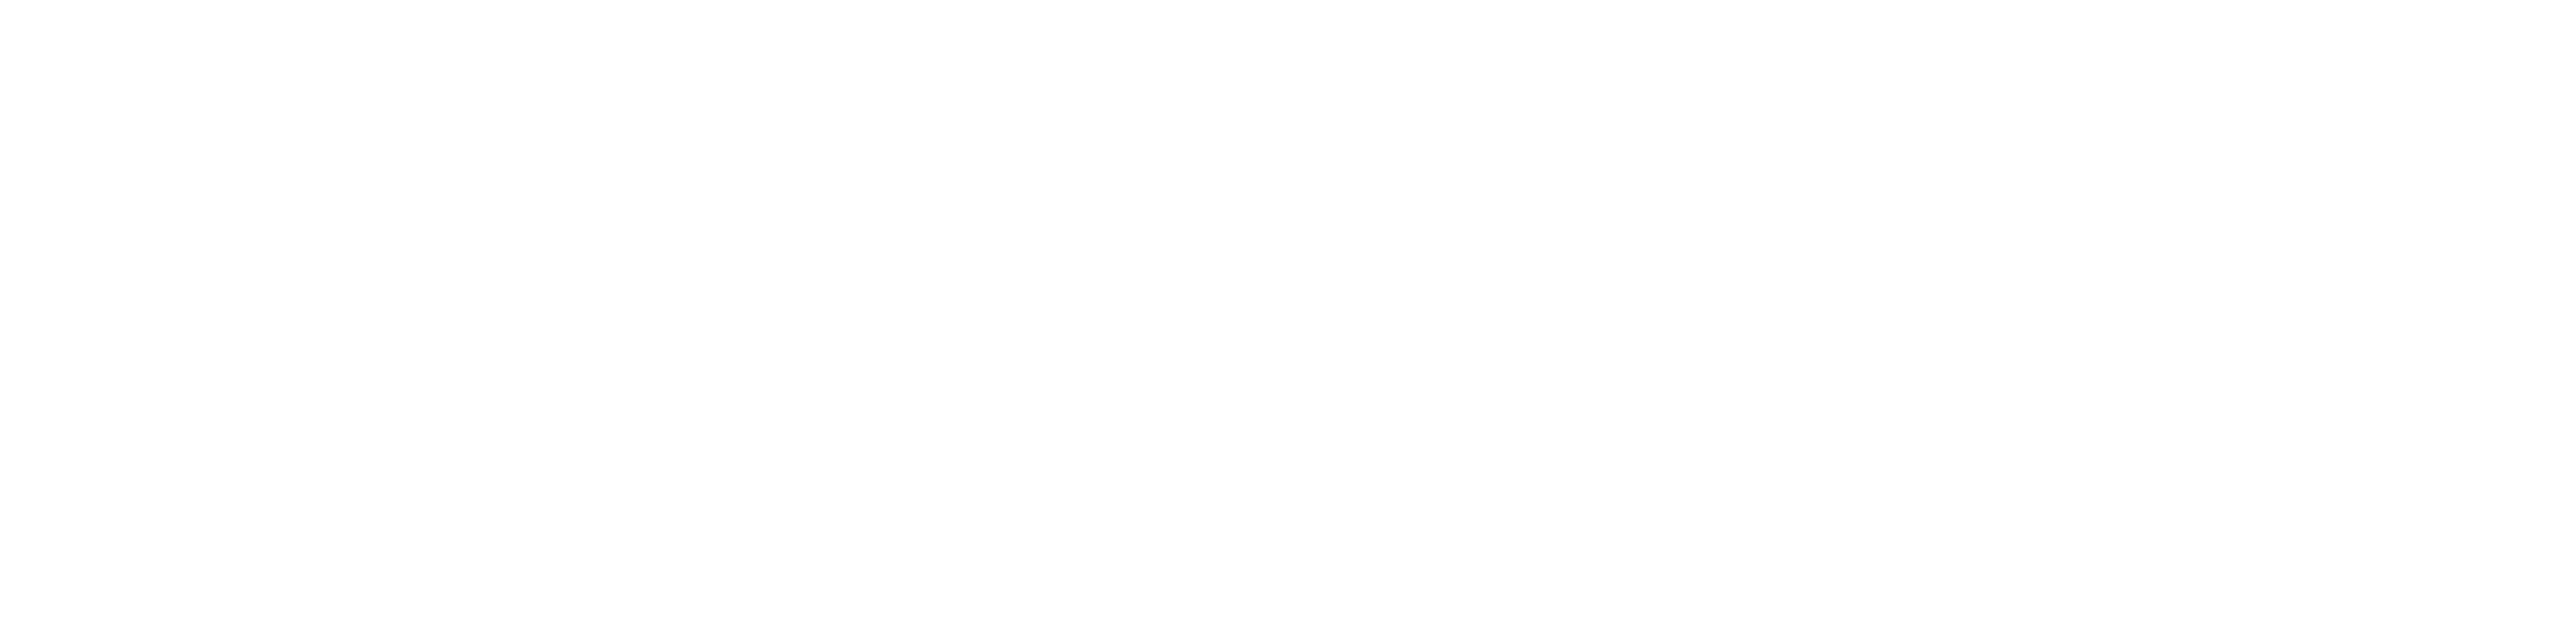 Logo de GFCOM